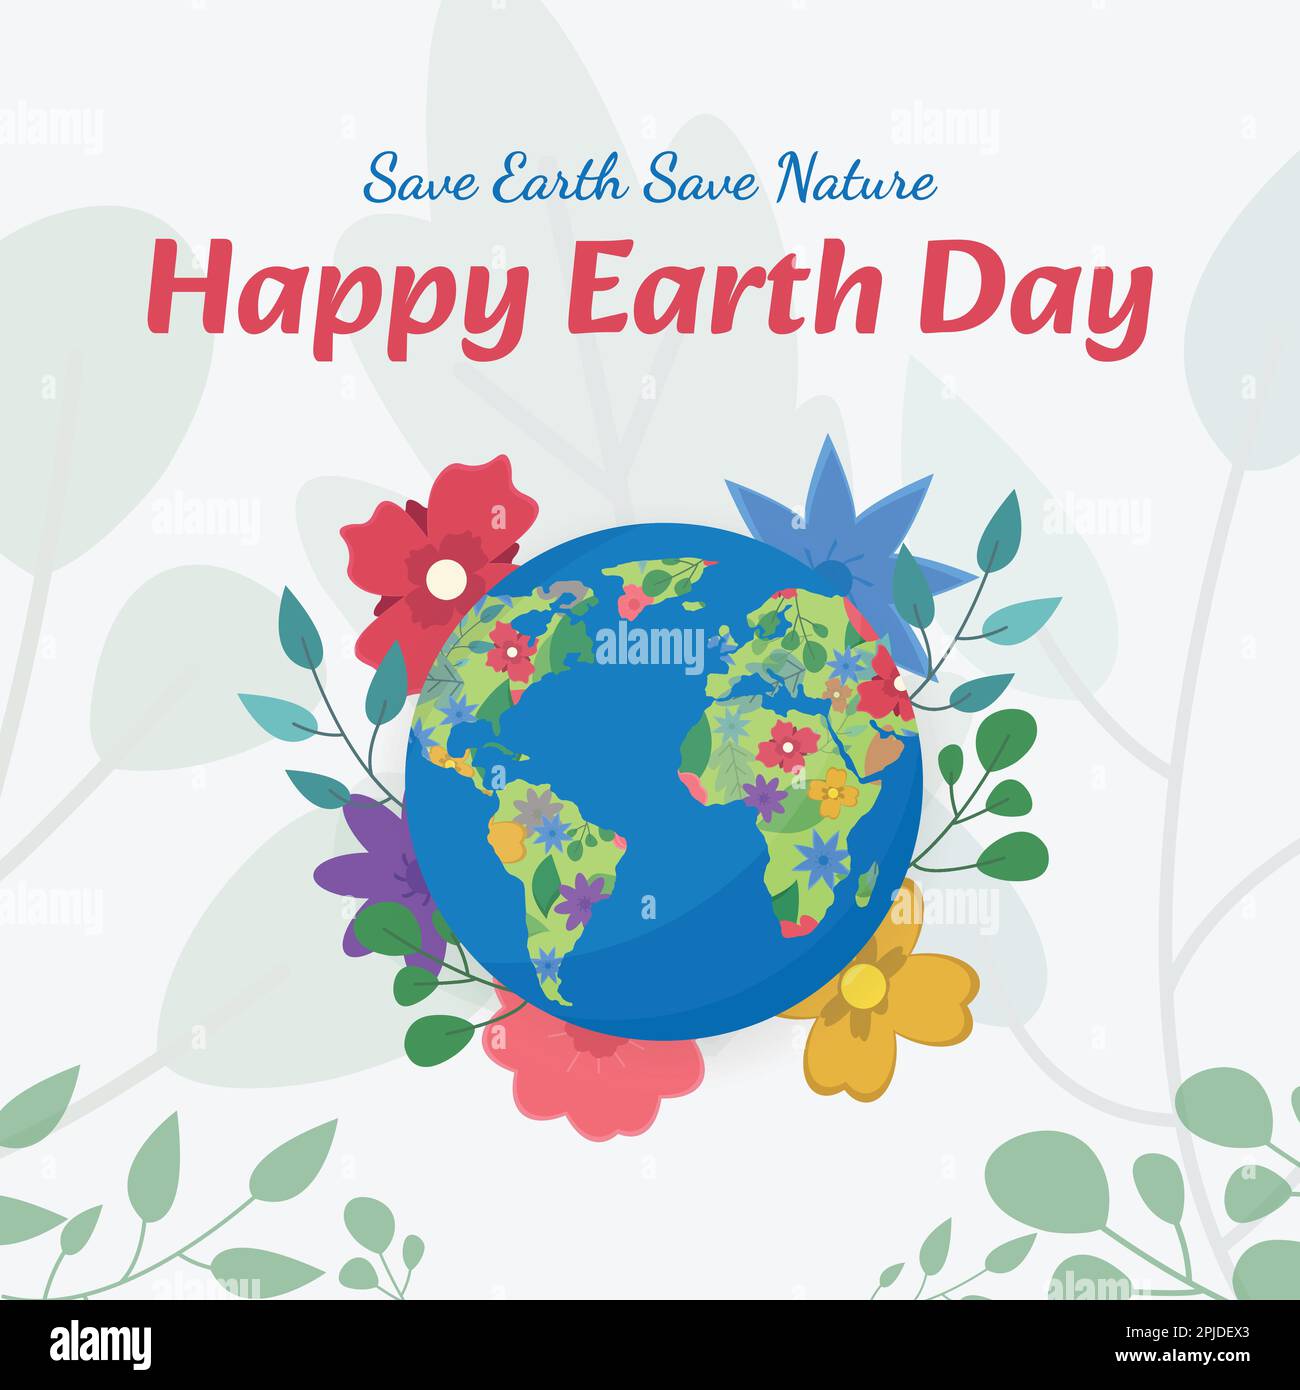 Happy Earth Day Celebration Design per posta, Poster, Card e Banner. 22nd aprile Giornata per sensibilizzare il pubblico sui cambiamenti climatici e salvare il mondo. Illustrazione Vettoriale